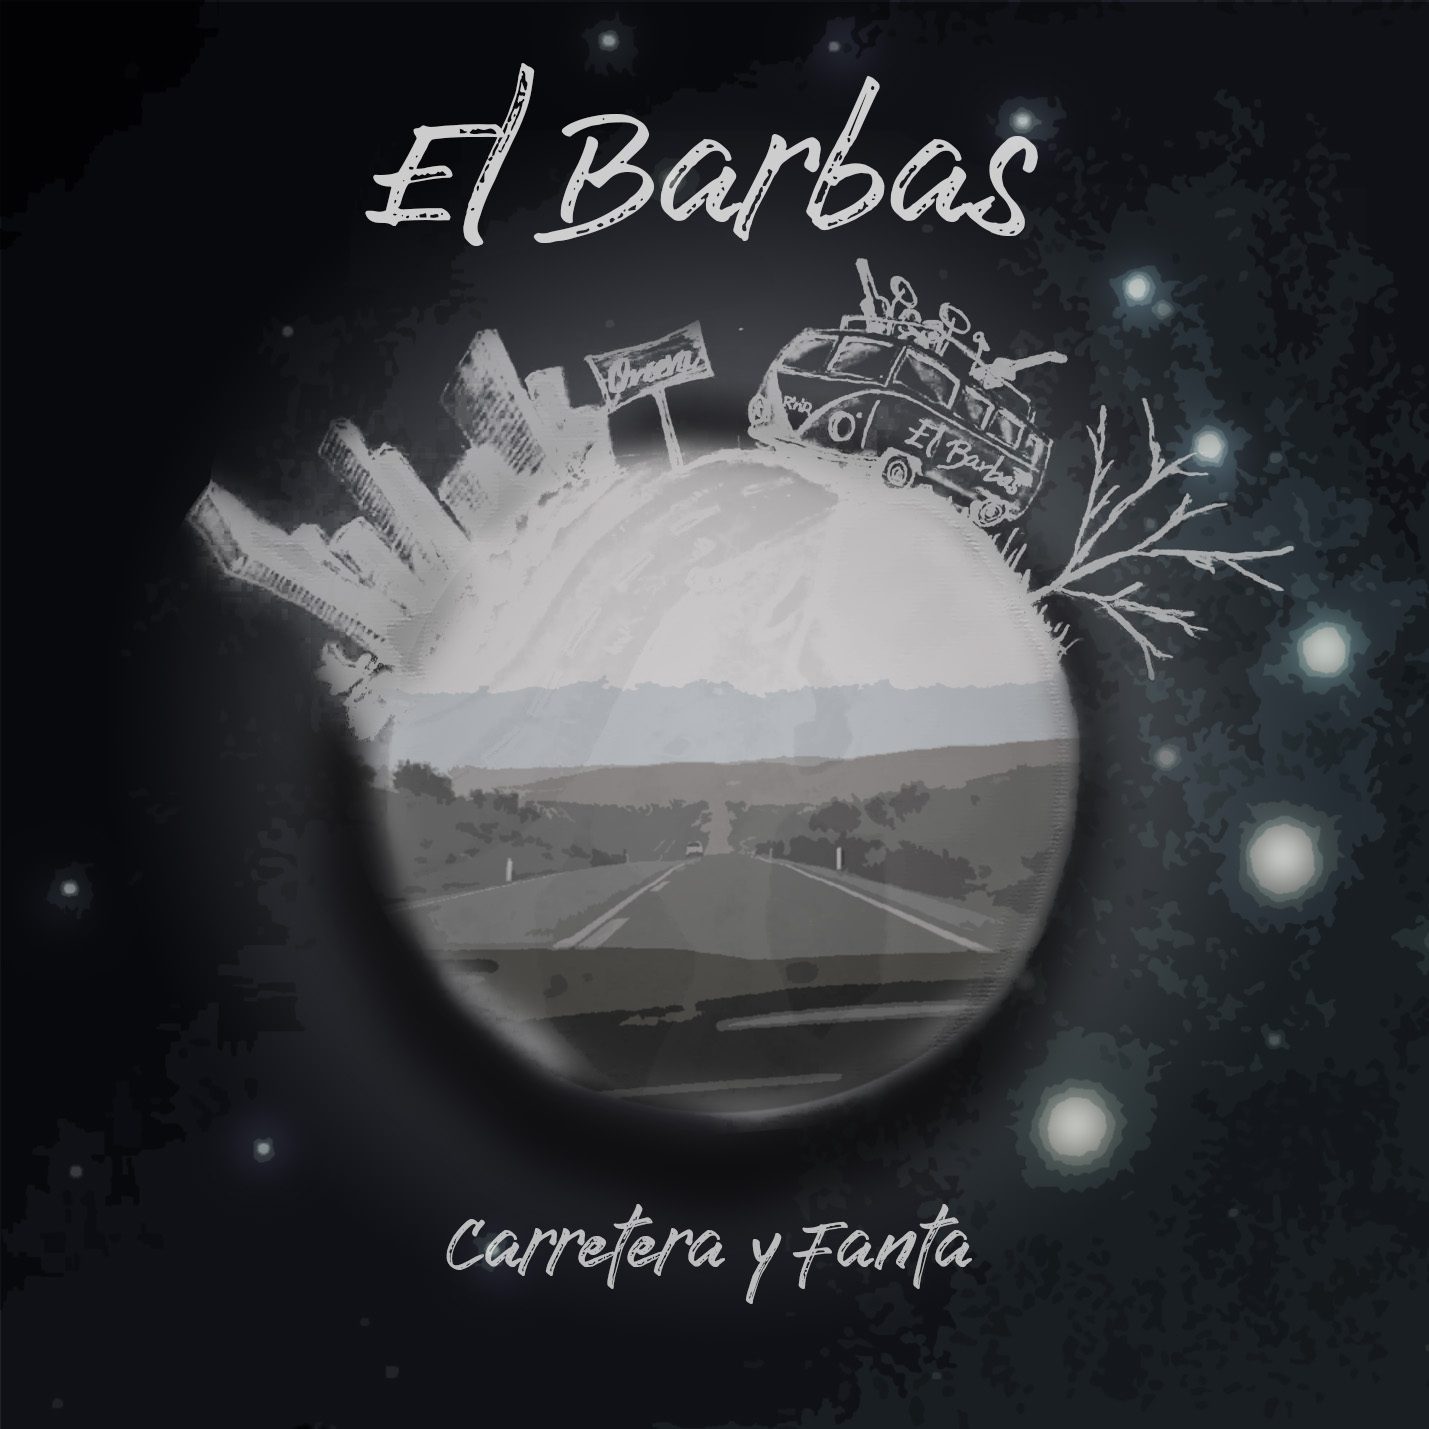 El Barbas estrena ‘Mi amiga soledad’ cuarto videoclip de su primer álbum ‘Carretera y Fanta’